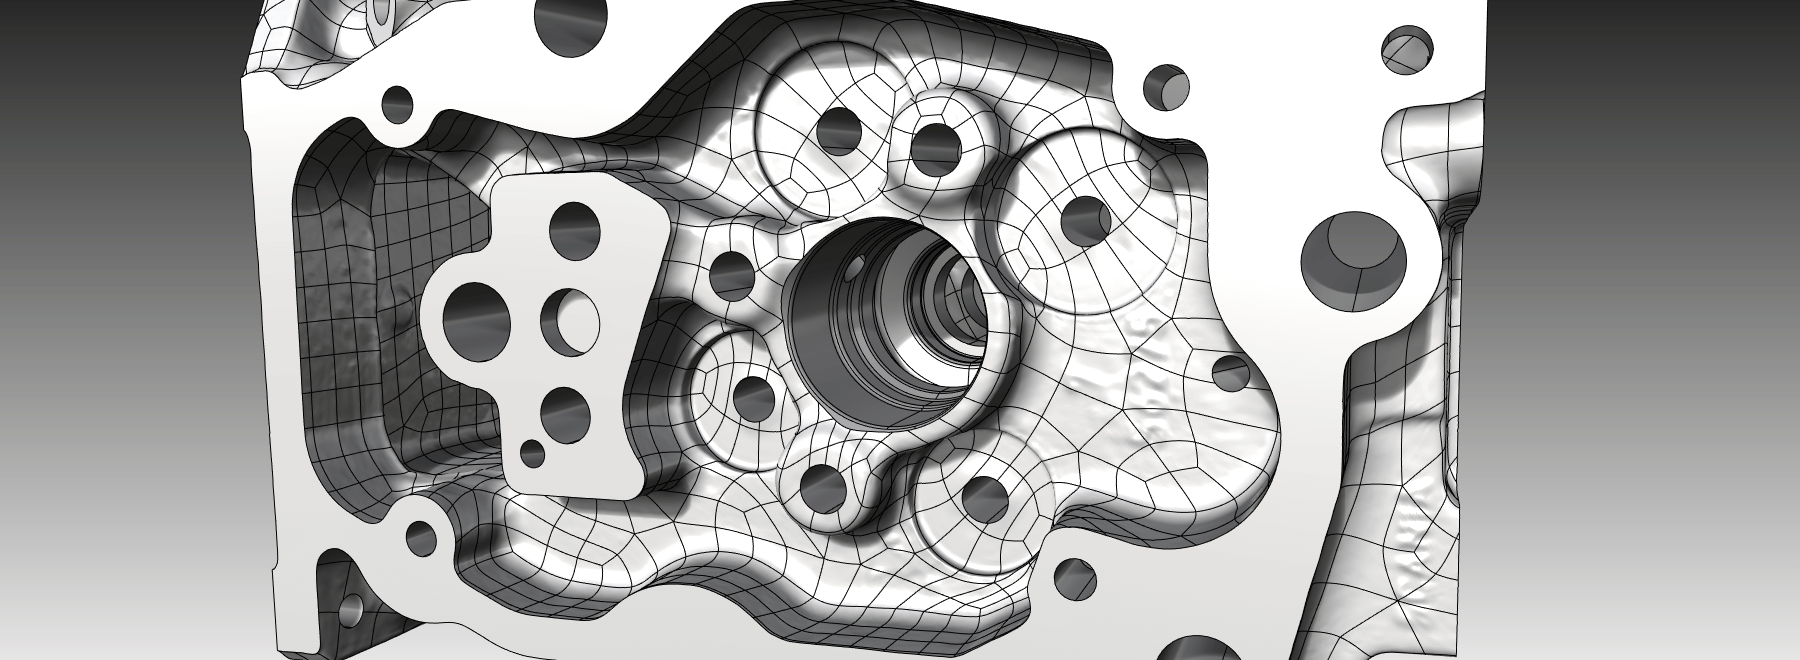 Die Darstellung zeigt das Hybrid-CAD-Modell eines Zylinderkopfs. Die Gussflächen werden als Freiformflächen und die bearbeiteten Flächen als Konstruktionsflächen dargestellt.